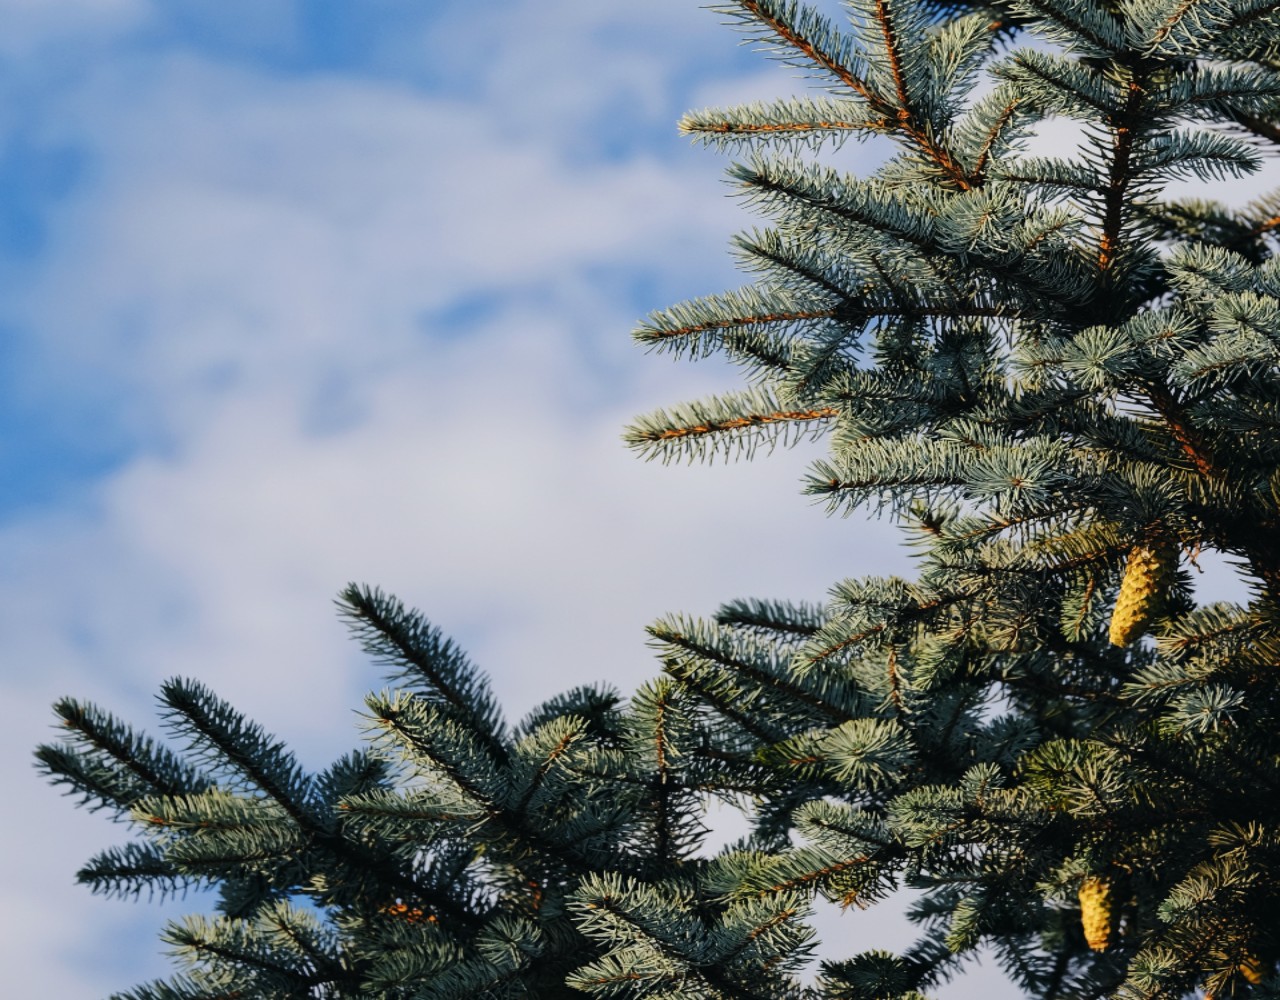 O Δήμος Παλαιού Φαλήρου ανακυκλώνει τα χριστουγεννιάτικα δέντρα